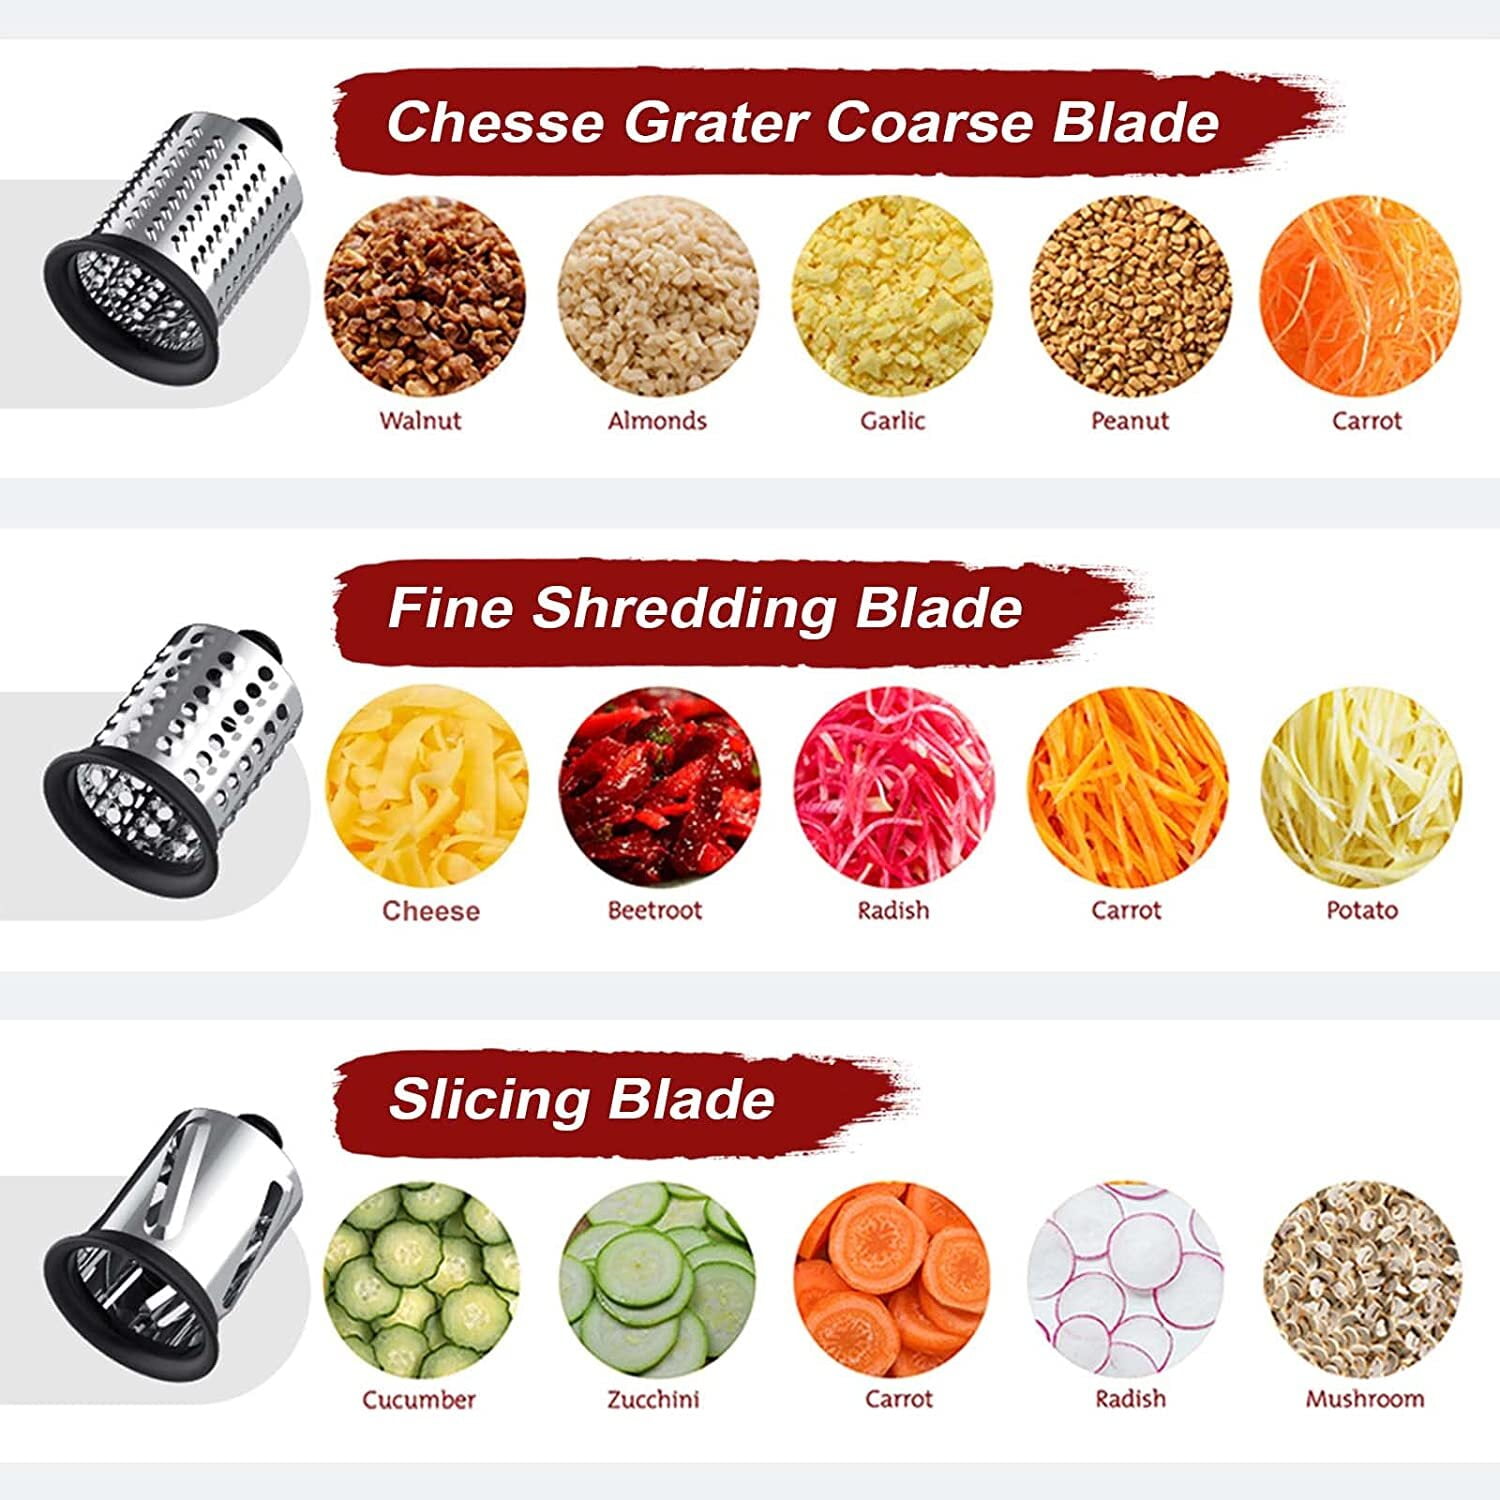 GVODE Silver Meat GrinderandSlicer Shredder Attachment for